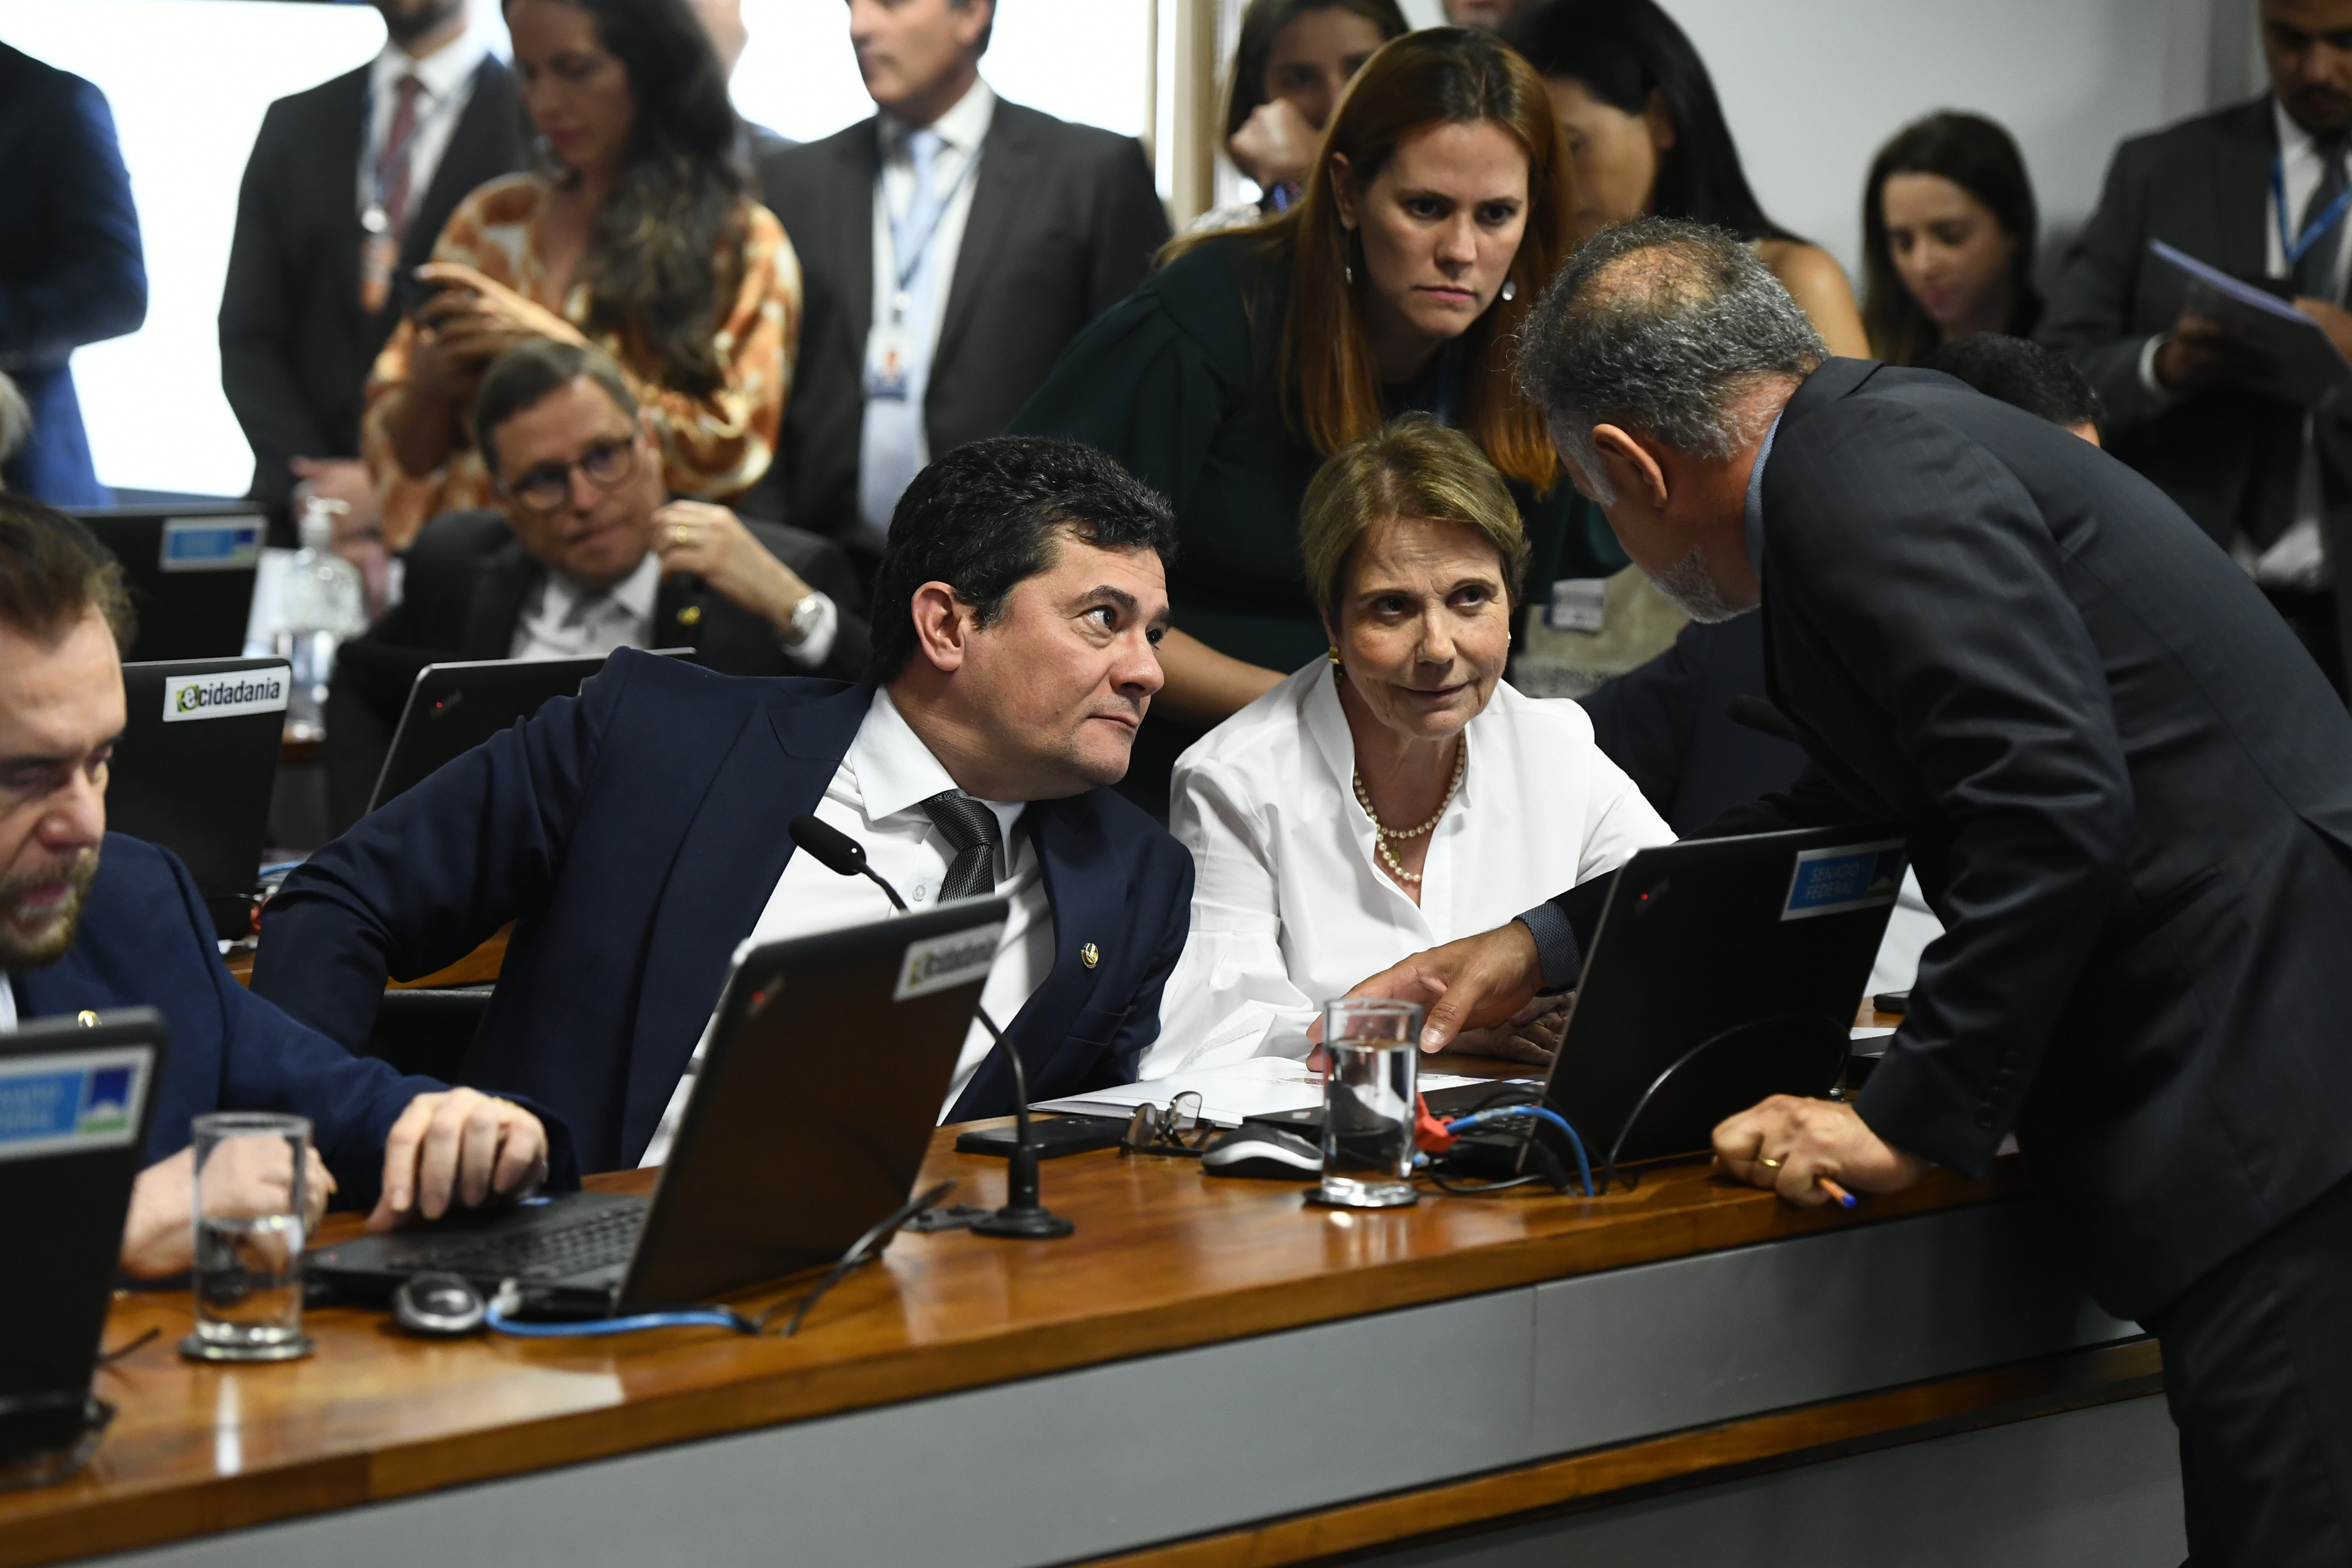 Bancada: 
senador Sergio Moro (União-PR); 
senadora Tereza Cristina (PP-MS); 
secretário de comissão, Ednaldo Magalhães Siqueira.